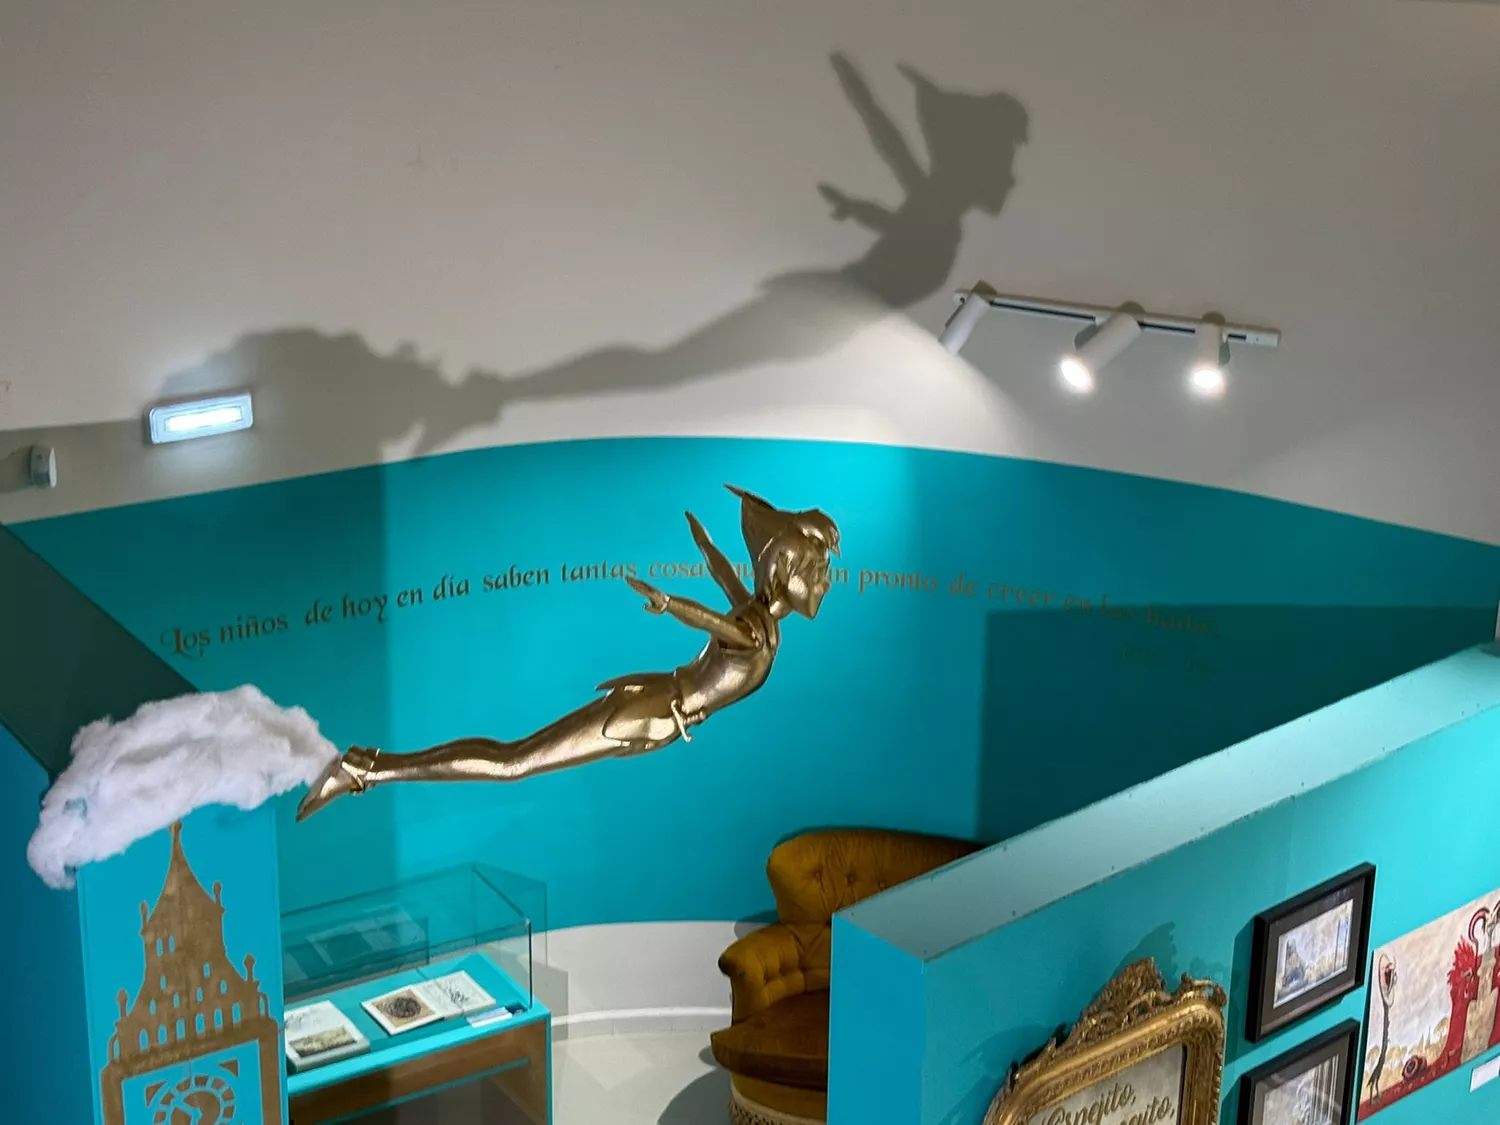 El Munic de Carracedelo amplía su exposición 'Somos cuentos' ante su enorme éxito con esculturas digitales, libros de los Hermanos Grimm y Andersen